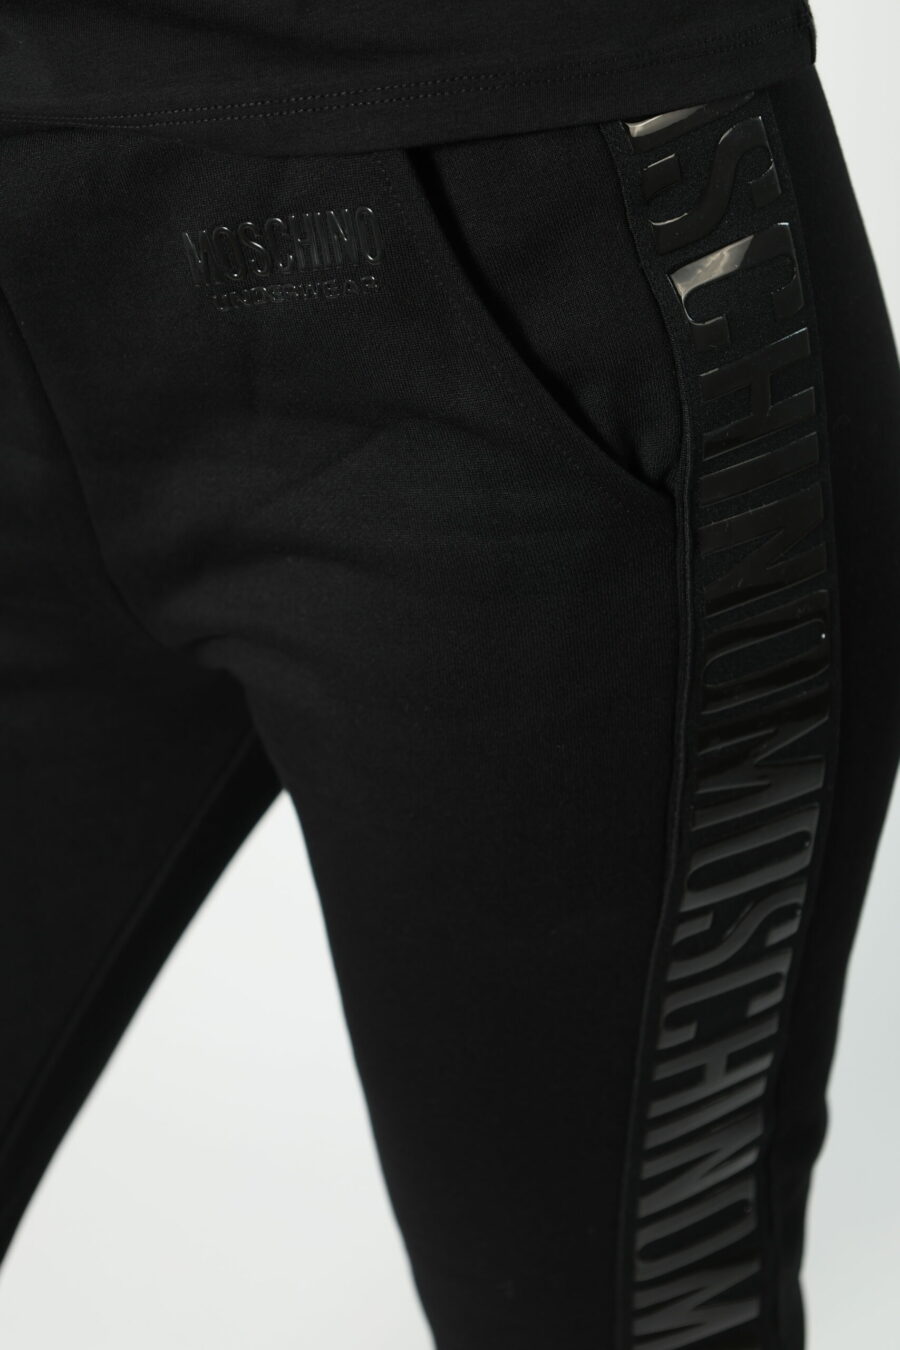 Pantalón de chándal negro con logo en cinta monocromático en laterales - 8052865435499 463 scaled